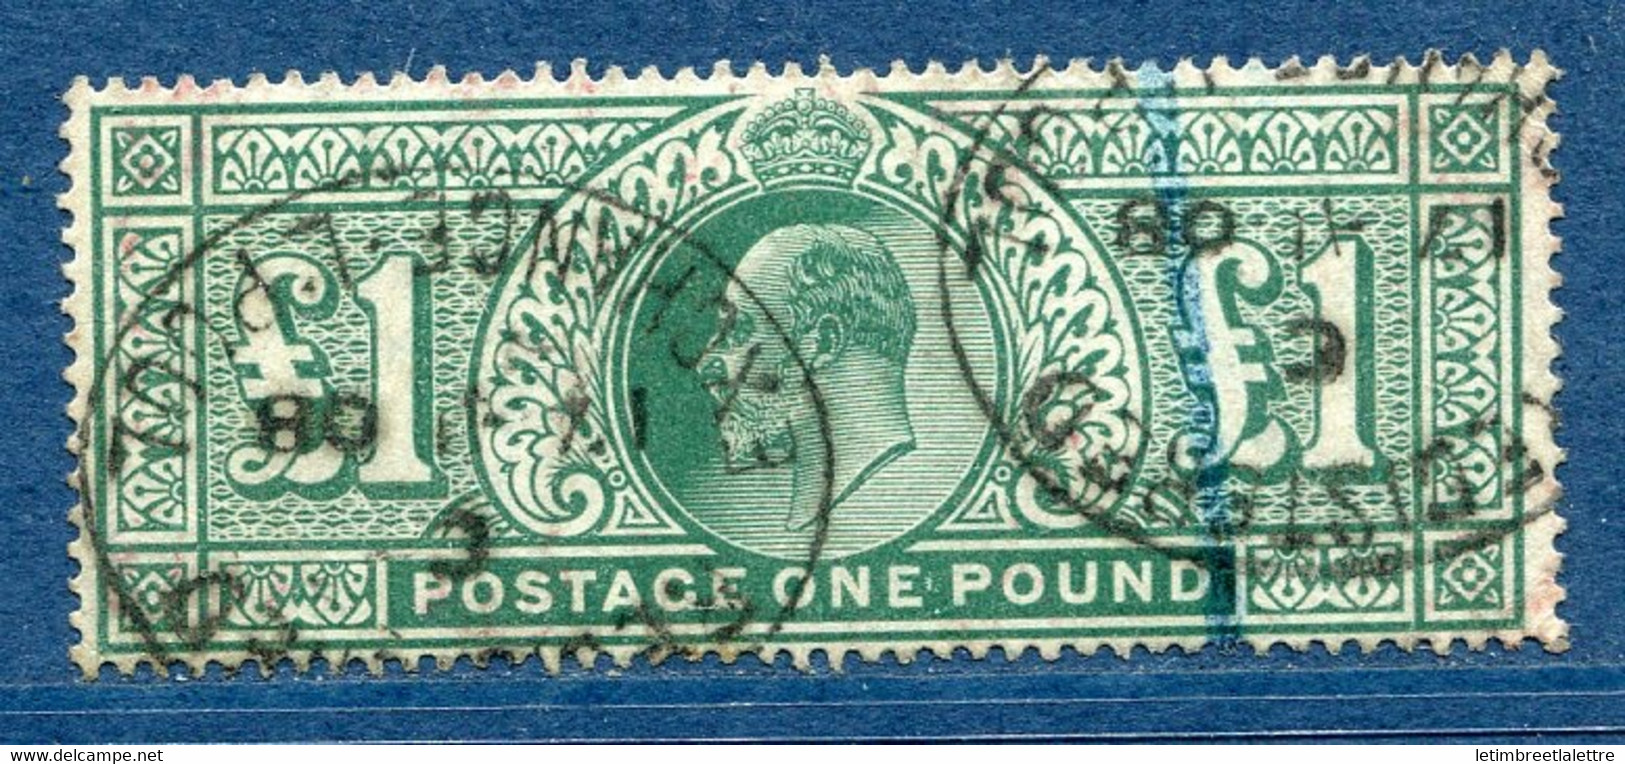 ⭐ Grande Bretagne - YT N° 121 - Oblitéré - 1902 / 1910 ⭐ - Unclassified